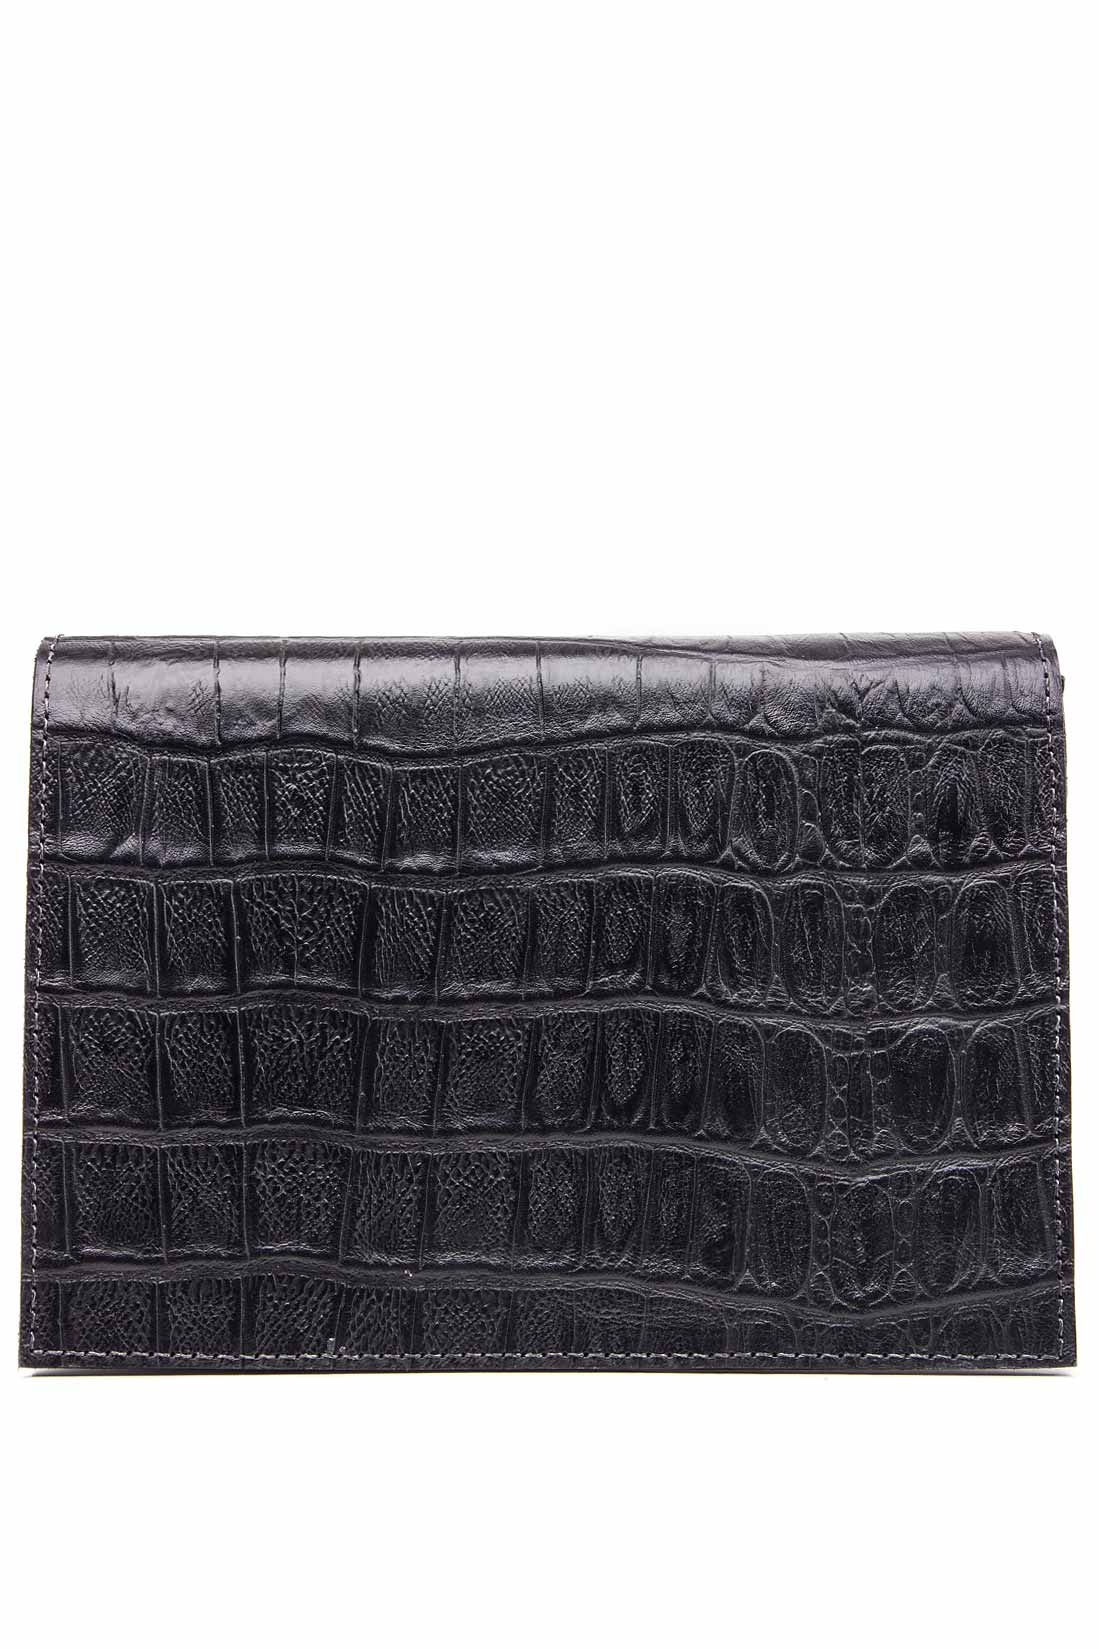 Croc-effect leather shoulder bag Laura Olaru image 2